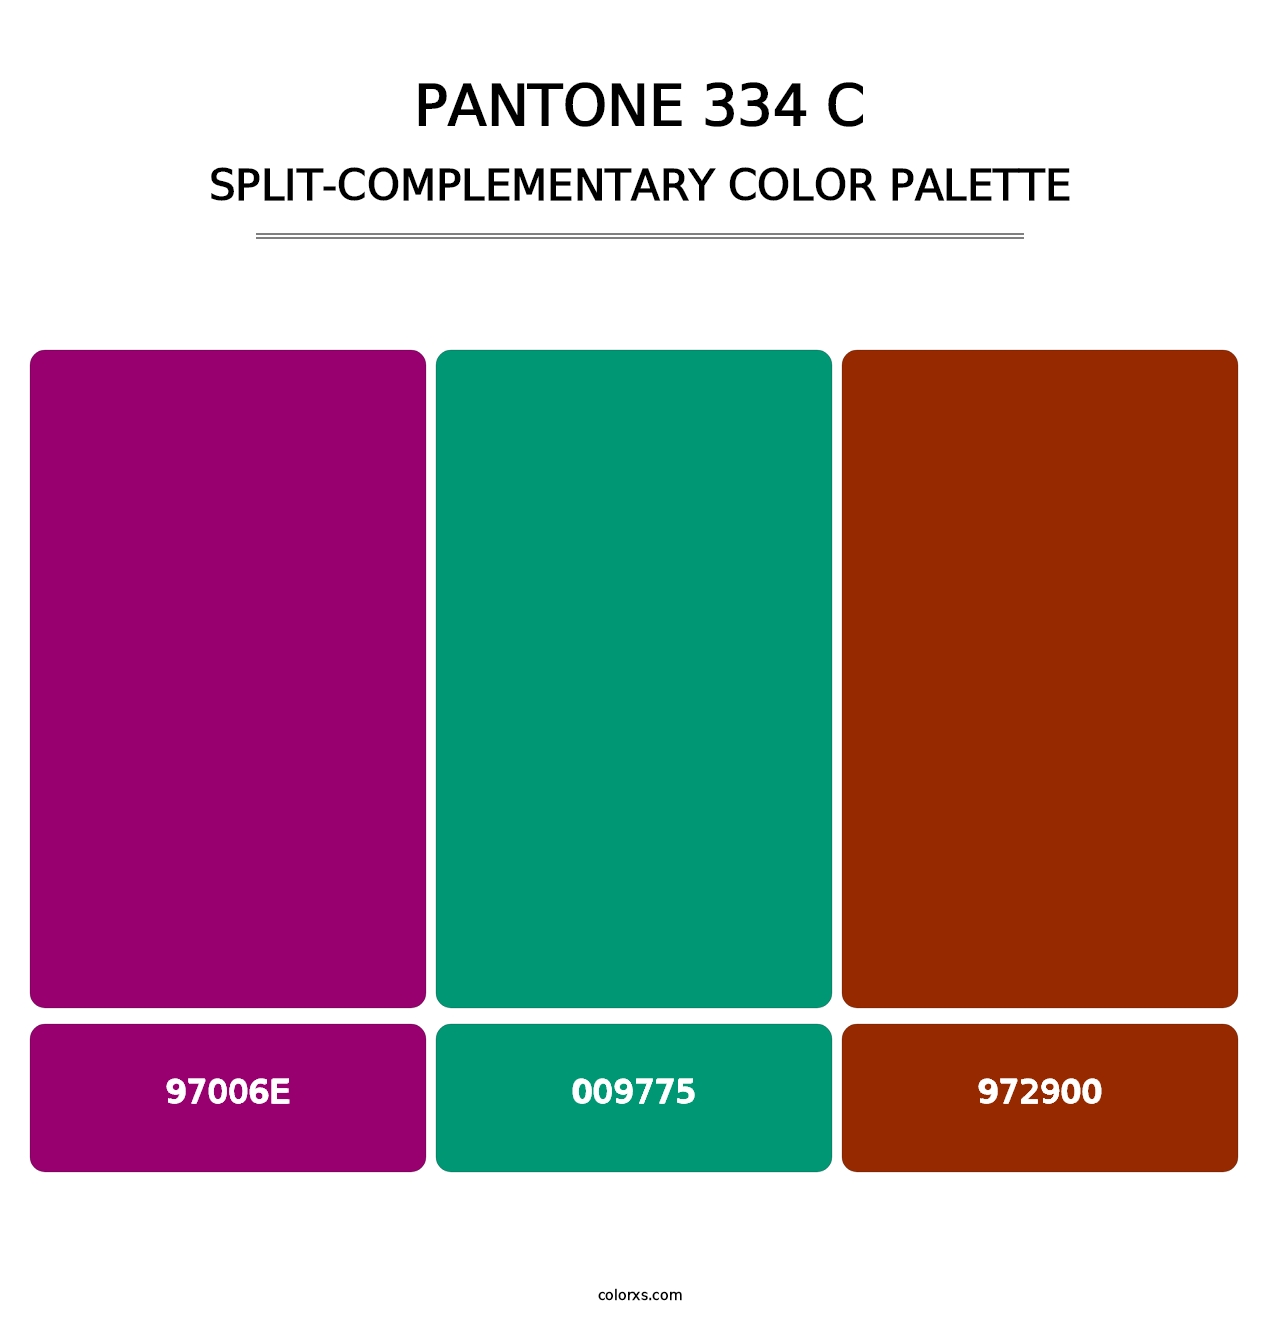 PANTONE 334 C - Split-Complementary Color Palette